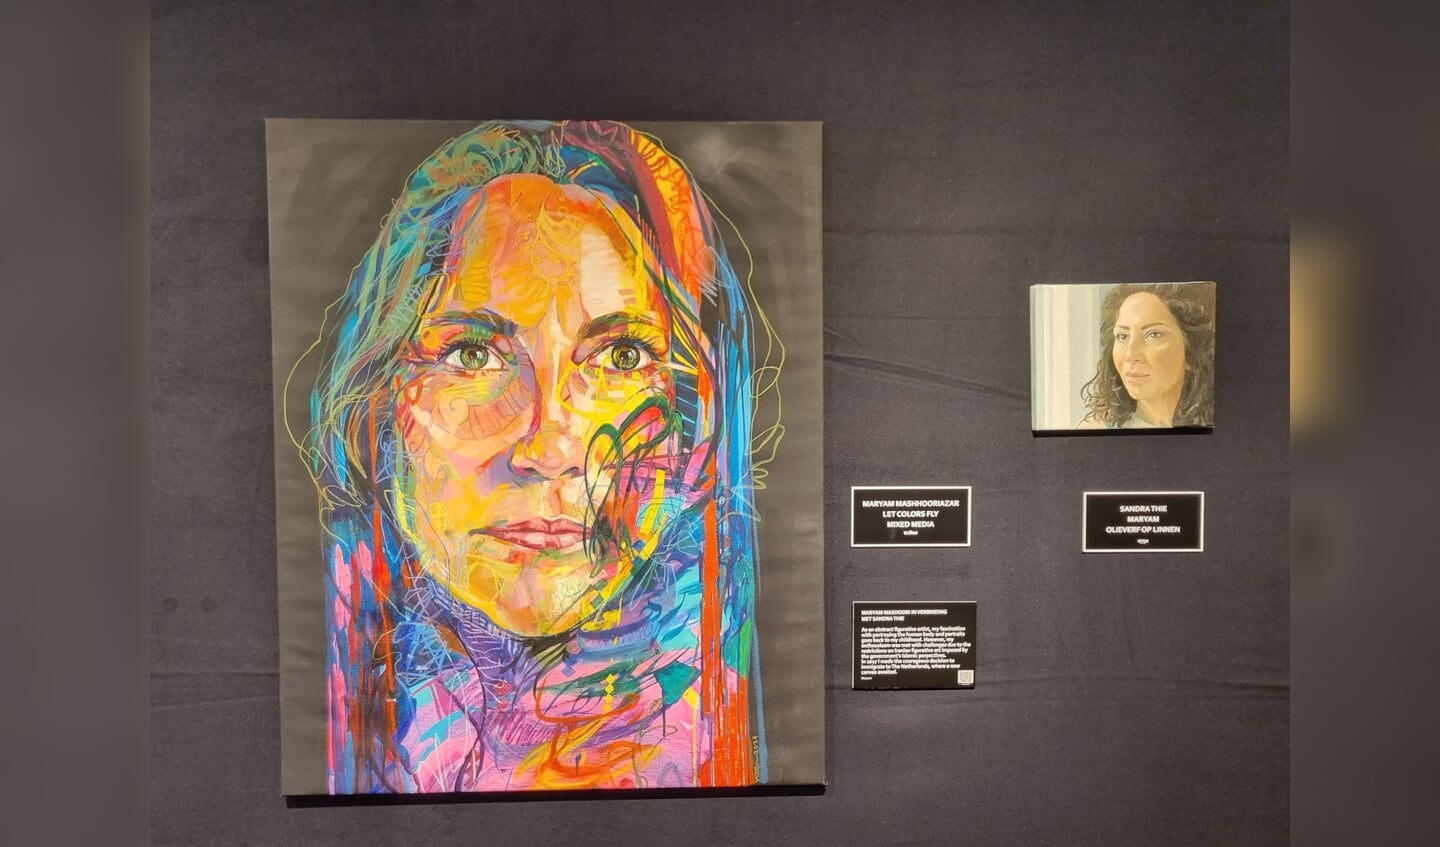 Schilderij op de expositie van de van oorsprong Iraanse Maryam Mashhoori met de titel ‘Let’ colors fly mixed Media’, met naast haar het portret van haarzelf gemaakt door Sandra Thie. Foto: Rob Weeber 